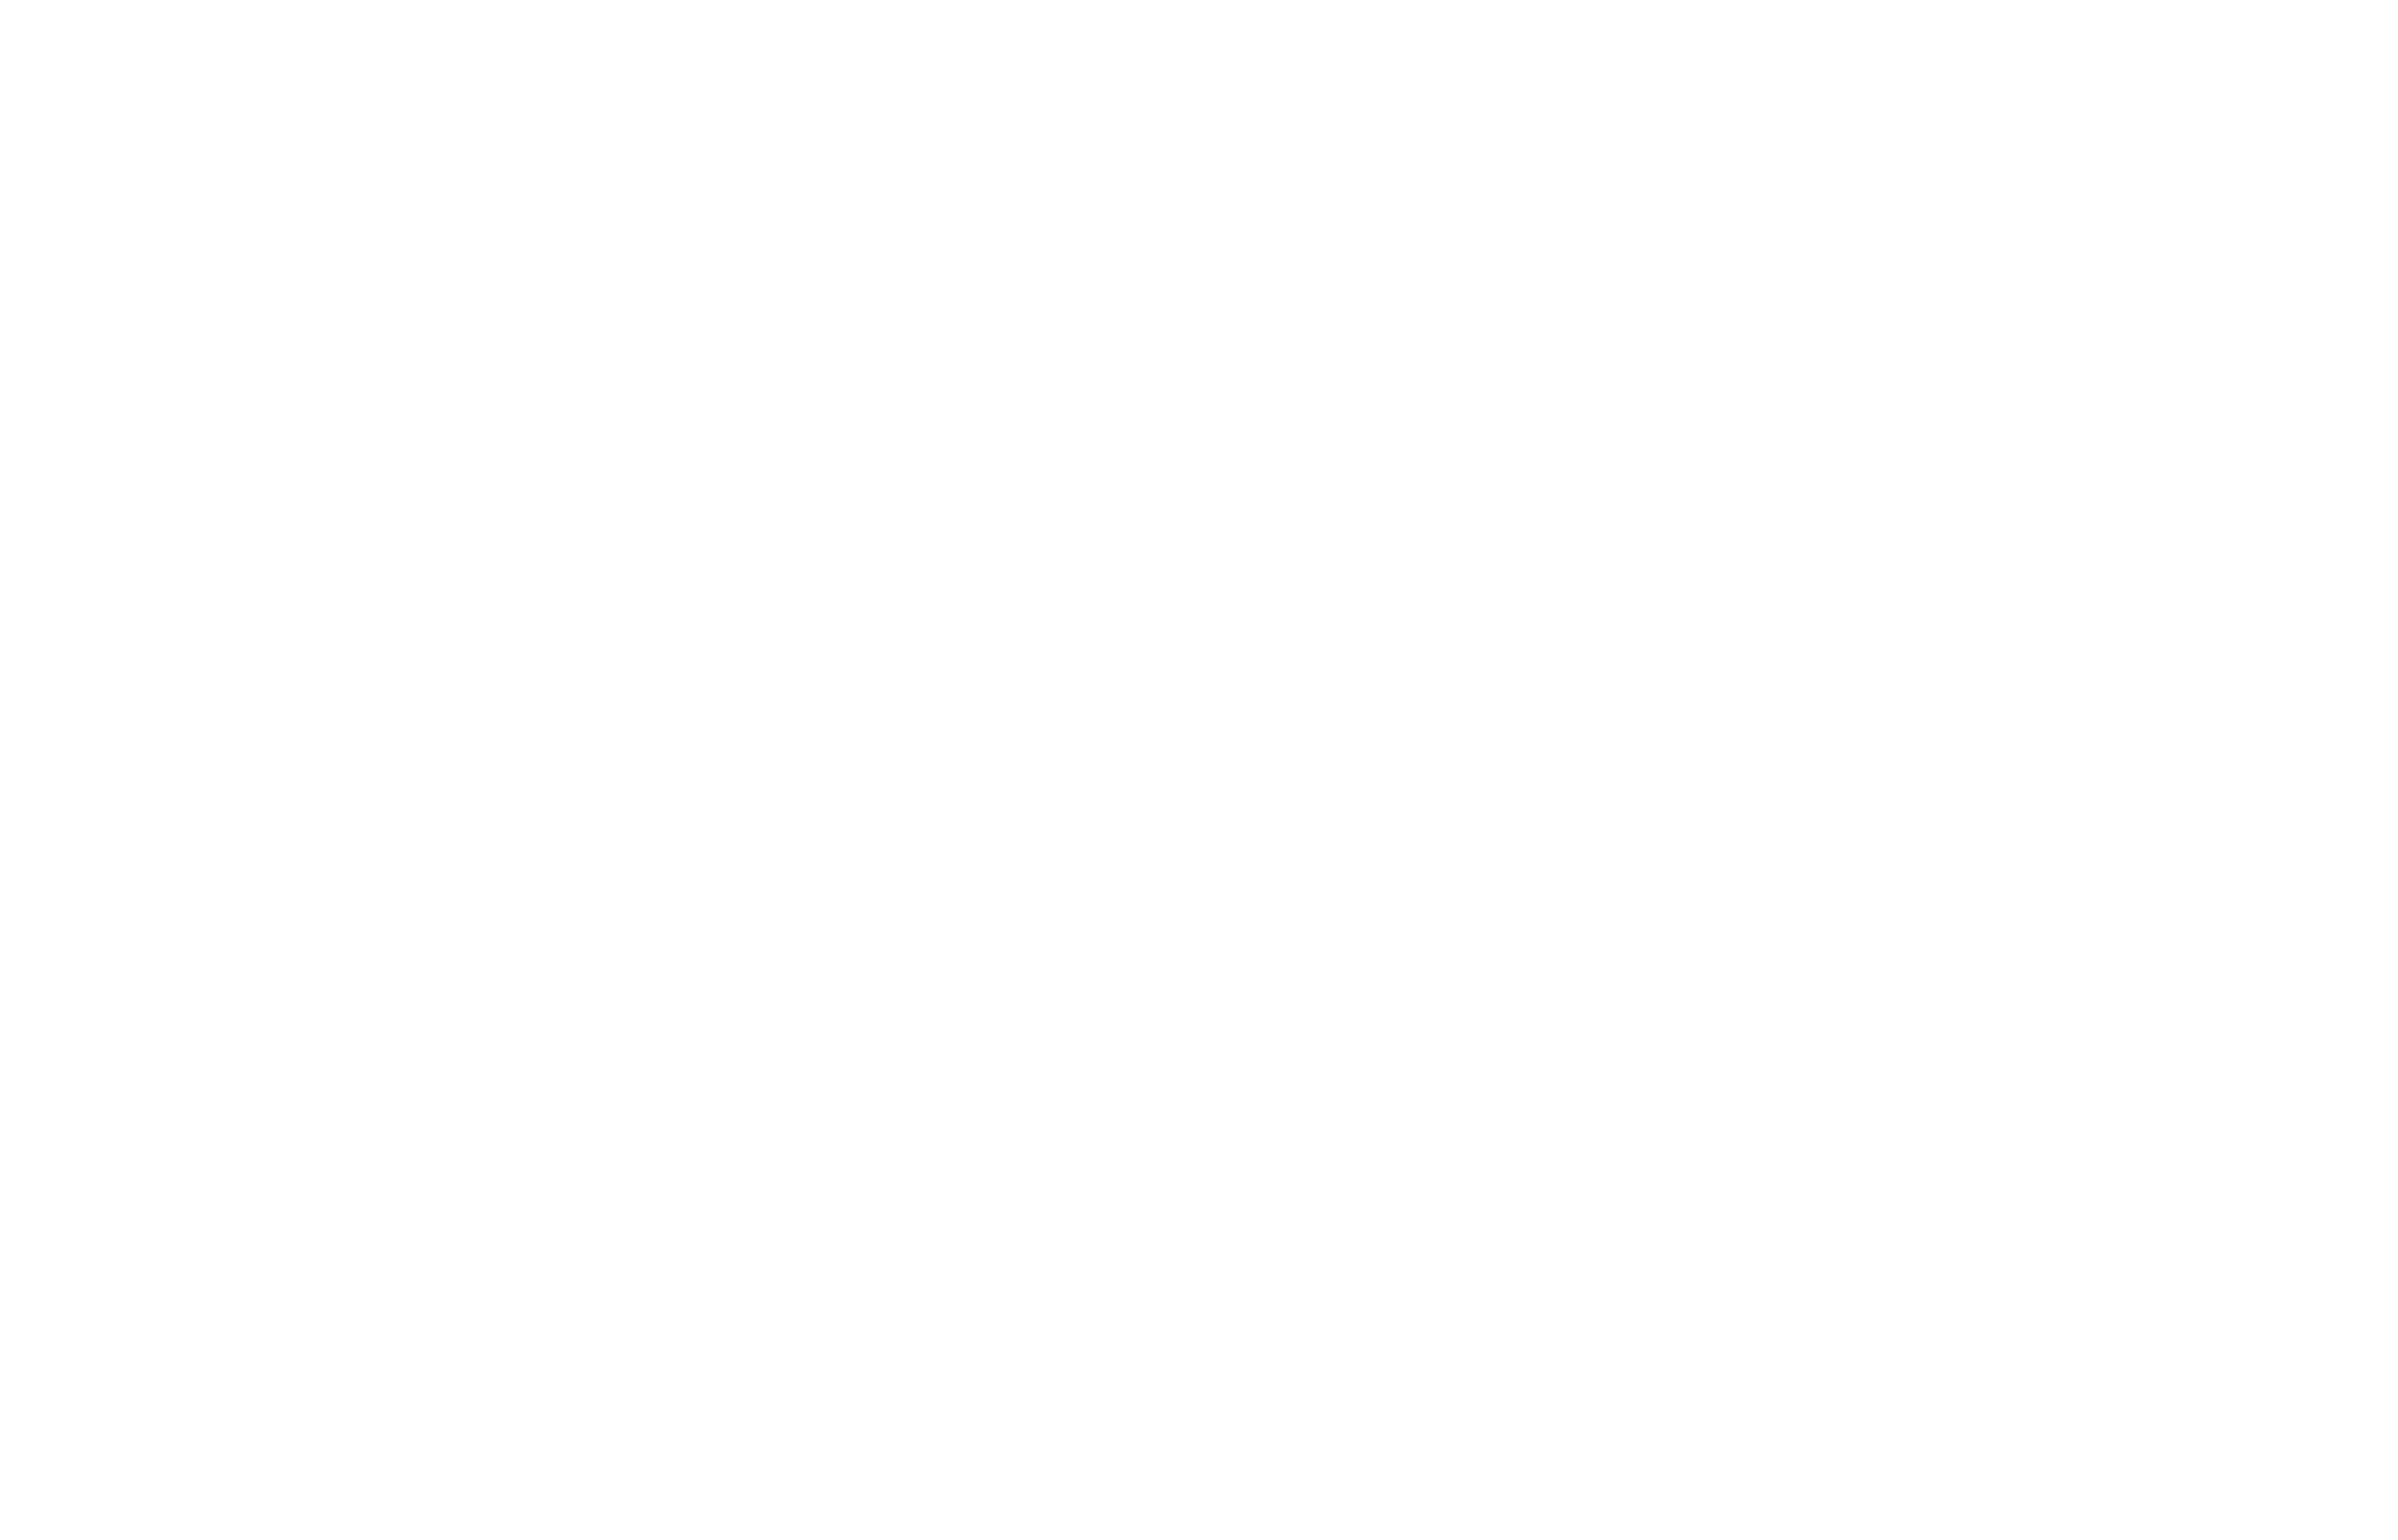 Logotipo con las letras AM en un diseño estilizado y minimalista sobre un fondo blanco acompañado por la palabra AUTOPARTES en una tipografía clara y visible con un símbolo de marca registrada al lado